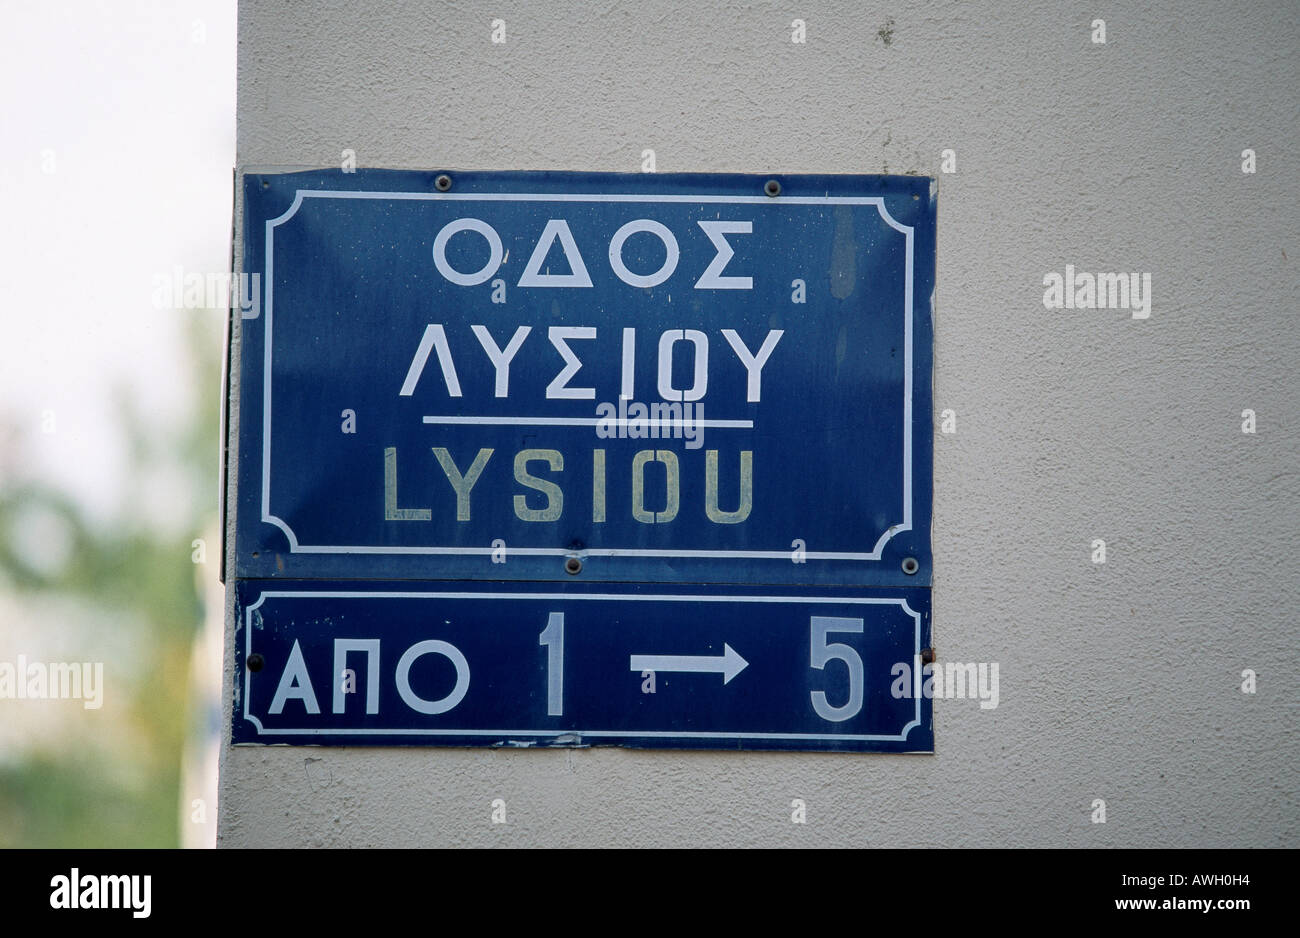 Griechenland, Athen, Lysiou, Straßenschild in Englisch, Griechisch und Latein-Skripten Stockfoto